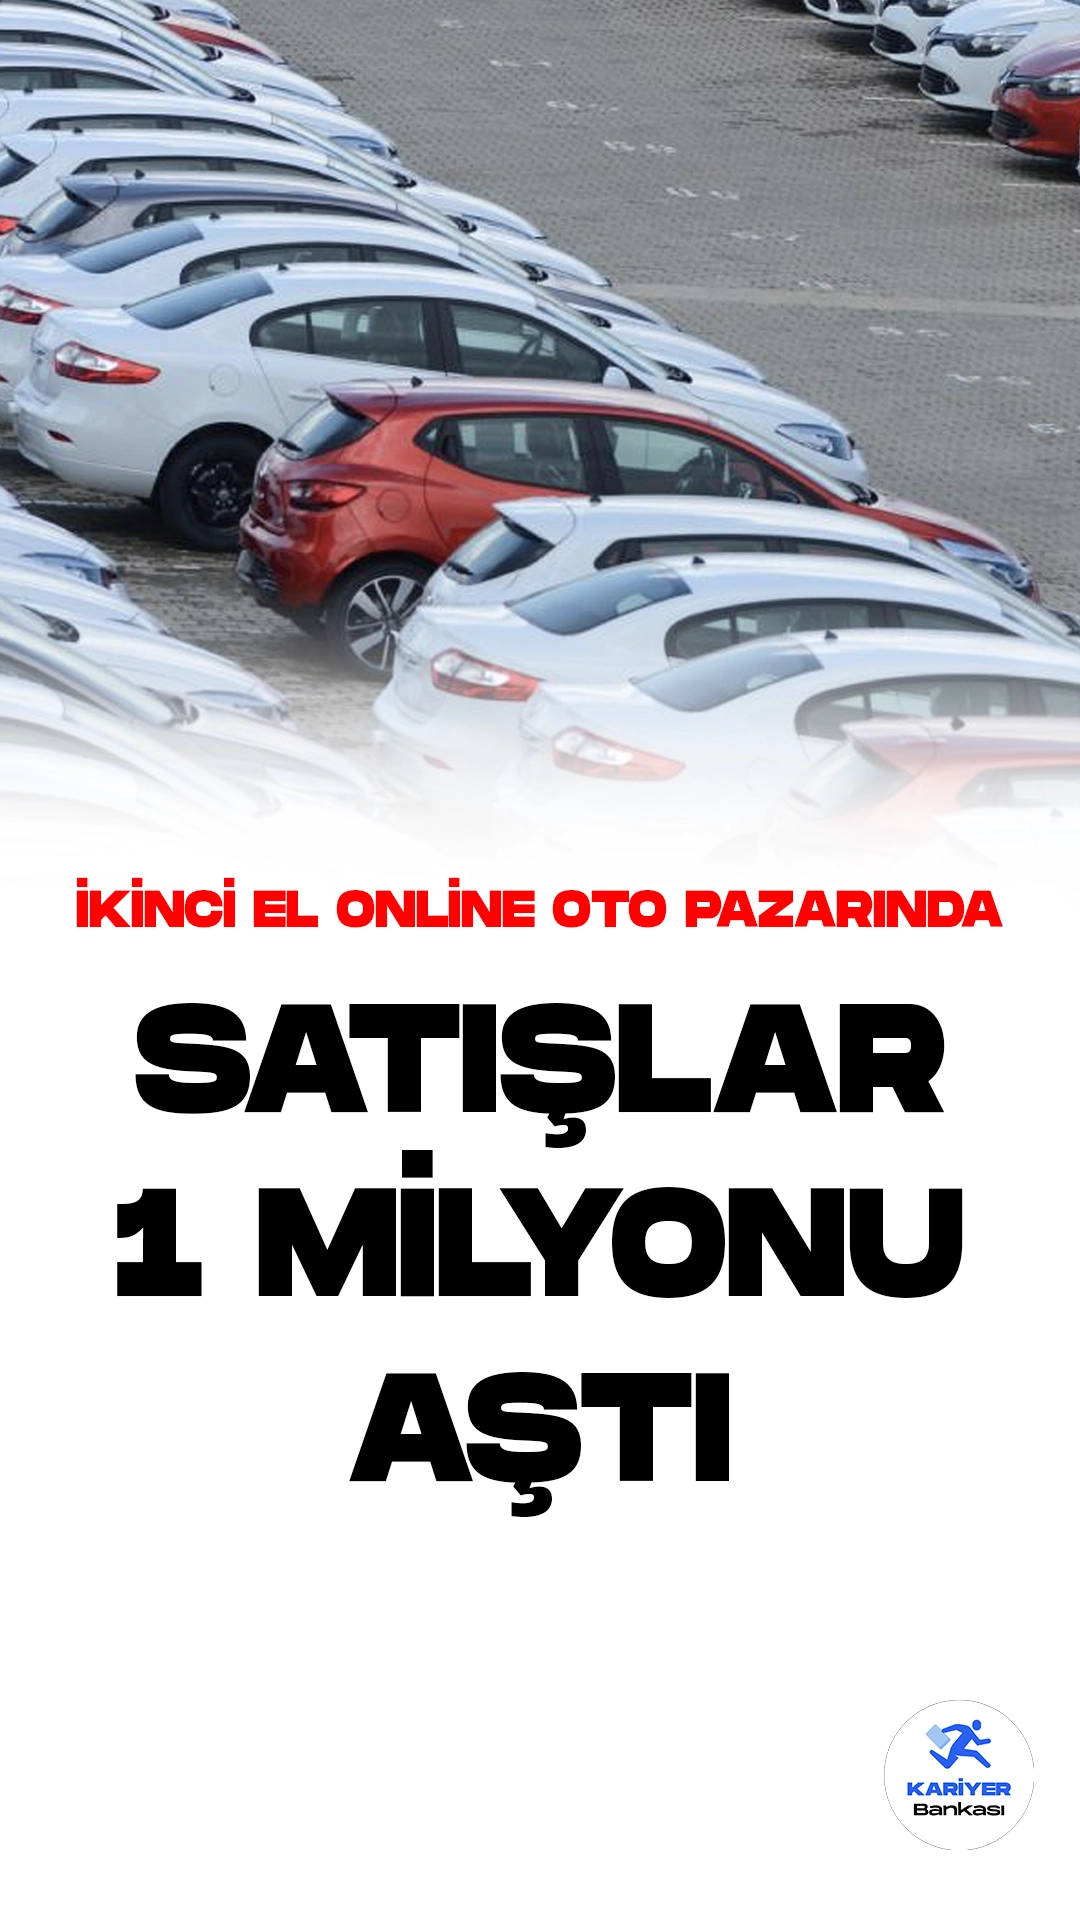 Türkiye'de İkinci El Araç Pazarı: Satışlar Yükselişte!Türkiye'de ikinci el online binek ve hafif ticari araç pazarı, bu yılın ilk altı ayında geçen yılın aynı dönemine göre %9'luk bir artışla 1 milyon 4 bin 721 adede ulaştı.